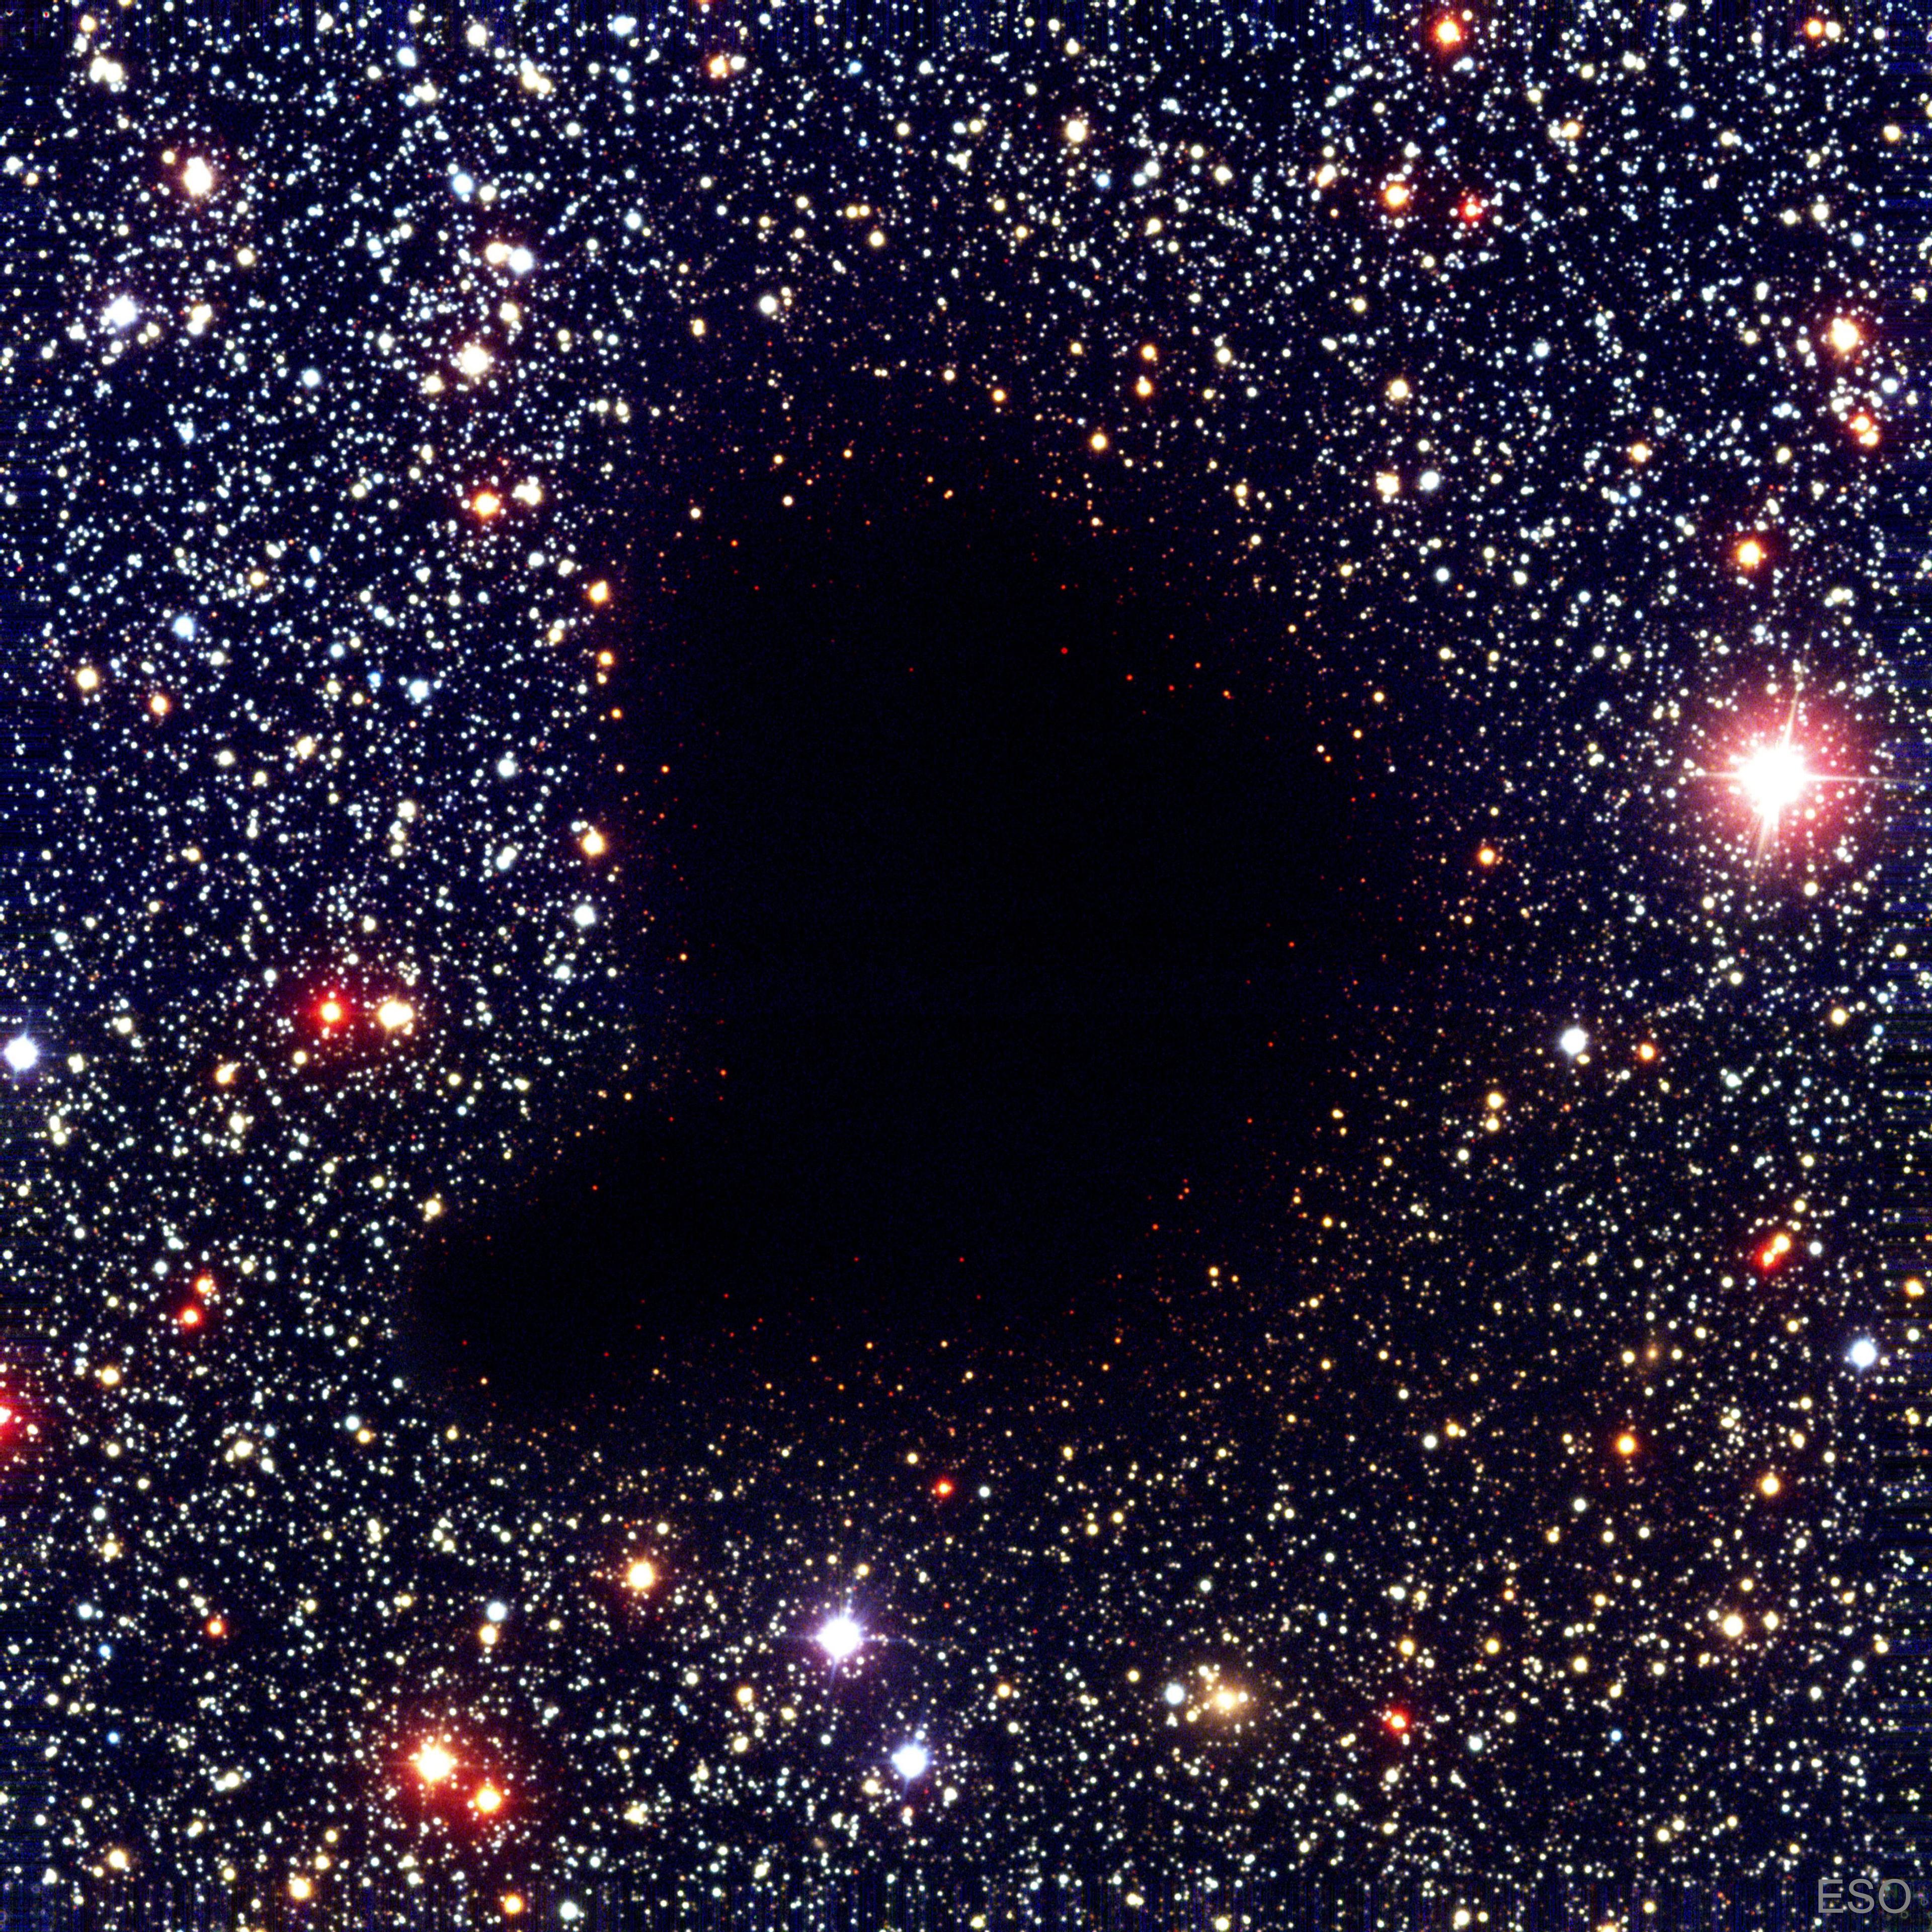 سحابةٌ مُظلِمة على شكل فاصِلة تظهر في منتصف حقلٍ كثيفٍ من النجوم. لا توجد نجومٌ مرئيّة عبر مركز السحابة.